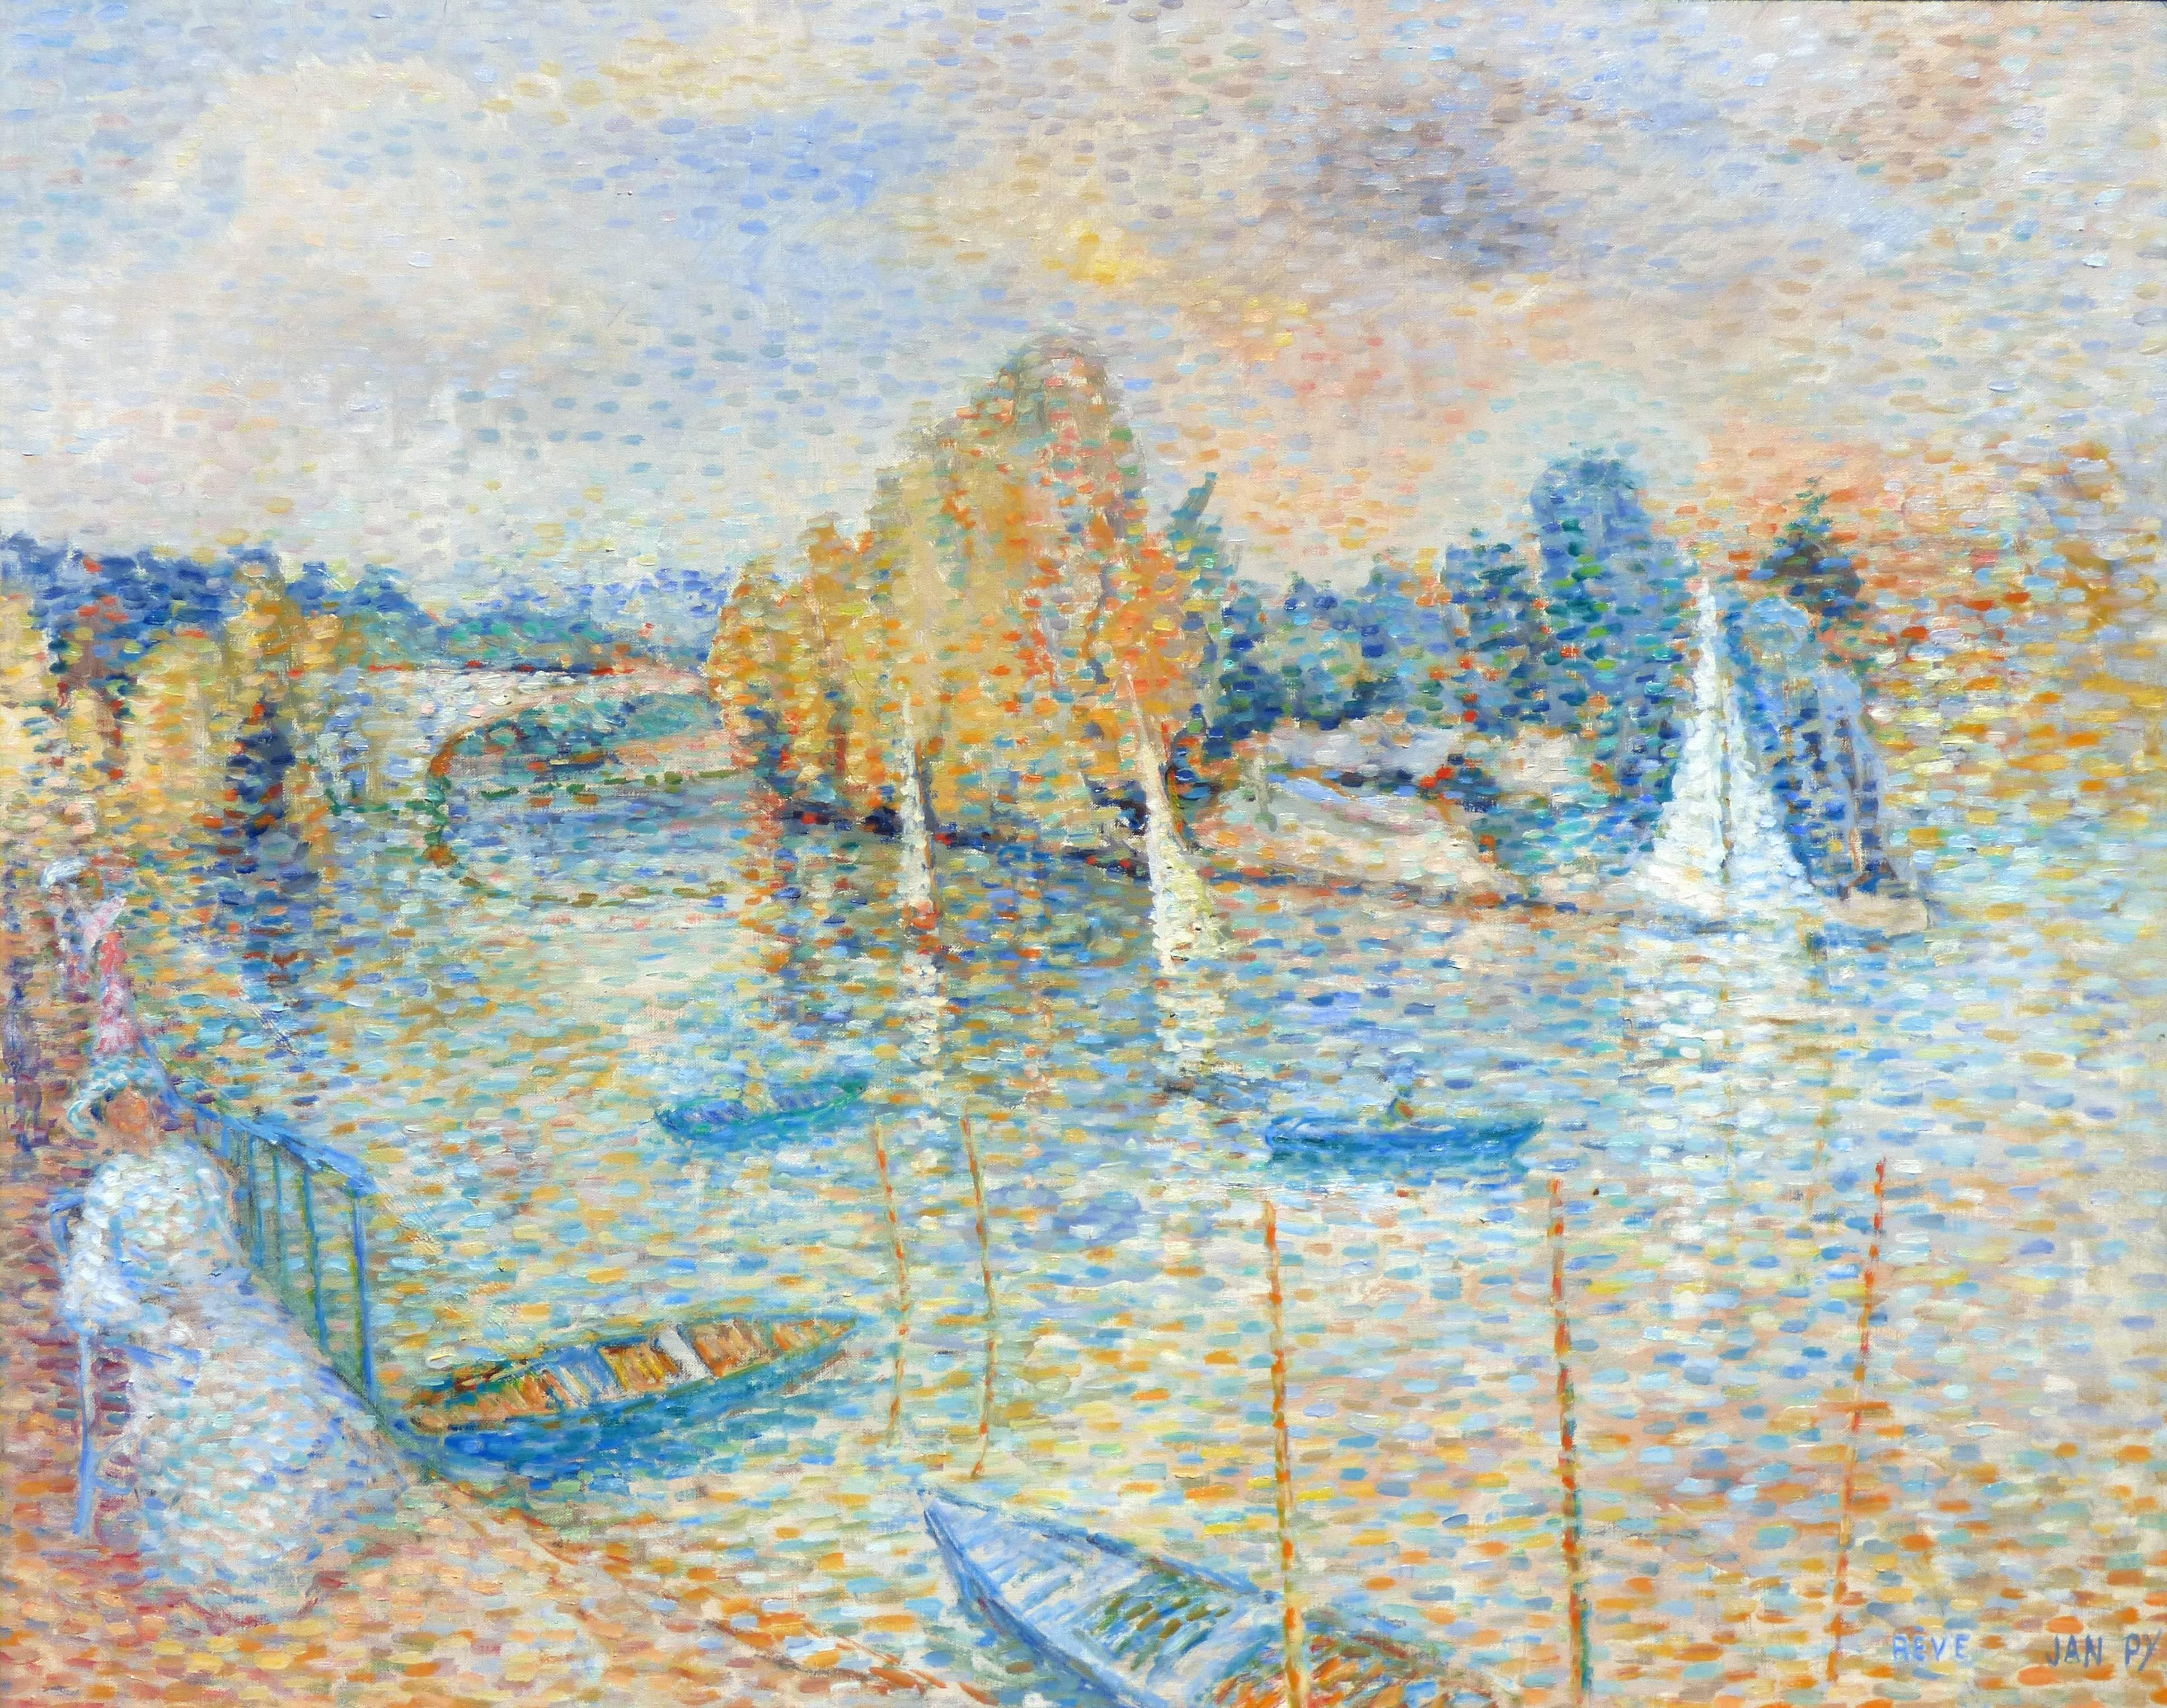 Jean-Pierre Eirisch Landscape Painting - Pointillist Dream near the Seine River in France